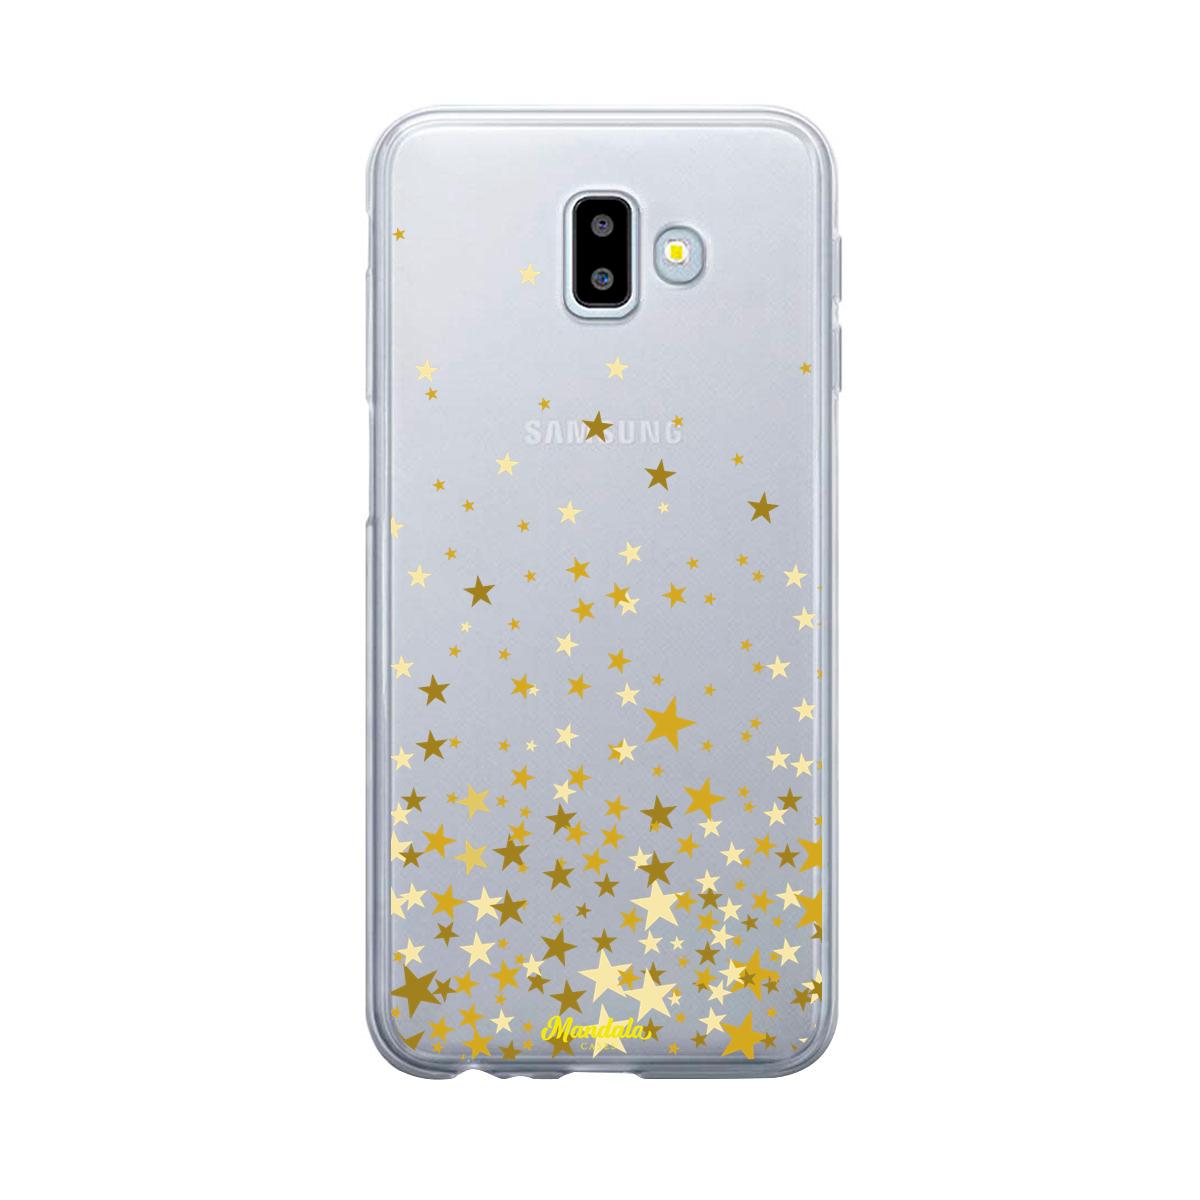 Estuches para Samsung J6 Plus - stars case  - Mandala Cases